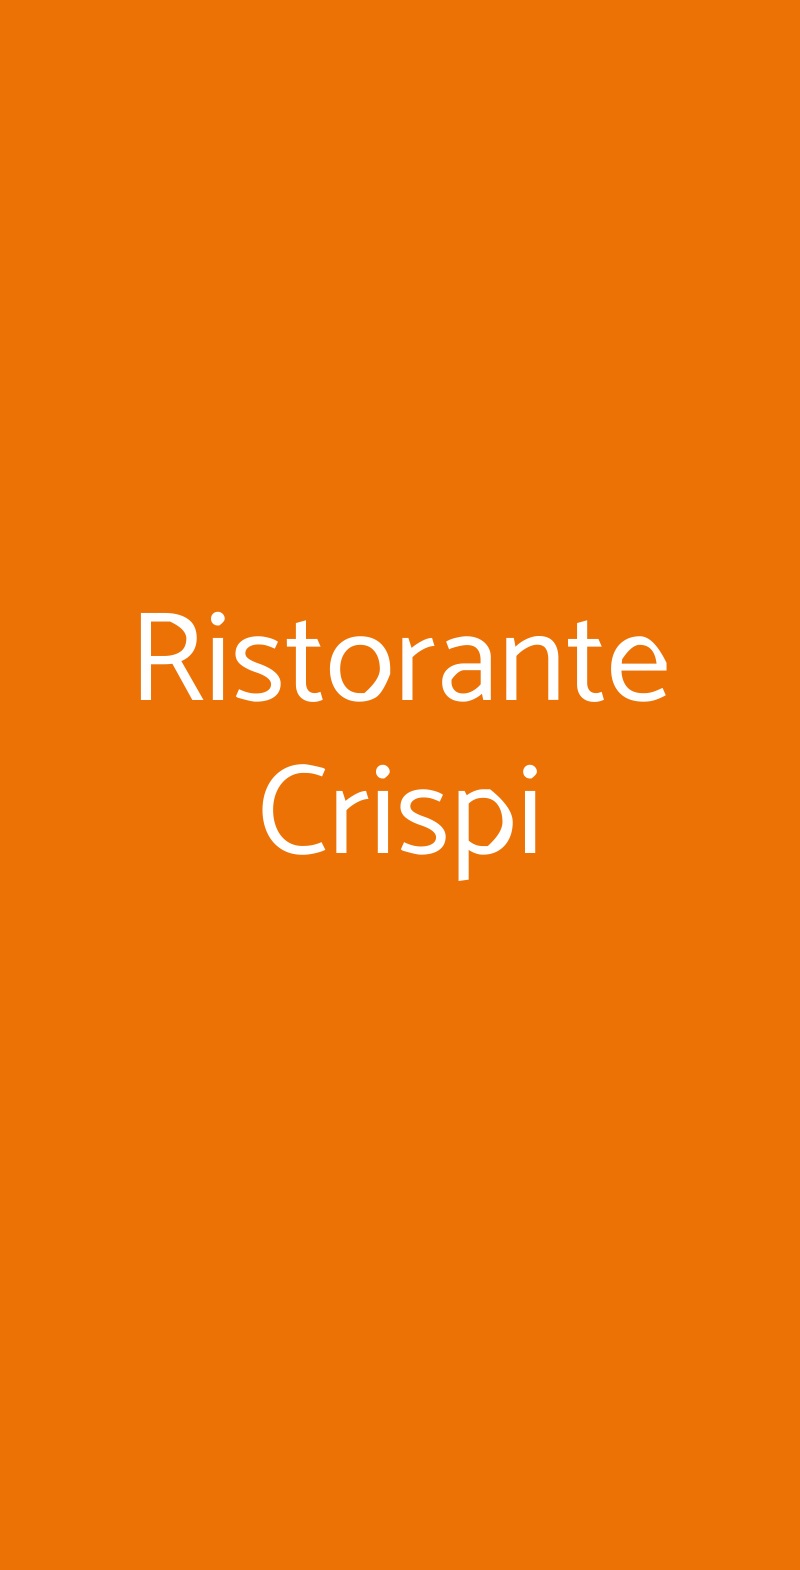 Ristorante Crispi Milano menù 1 pagina